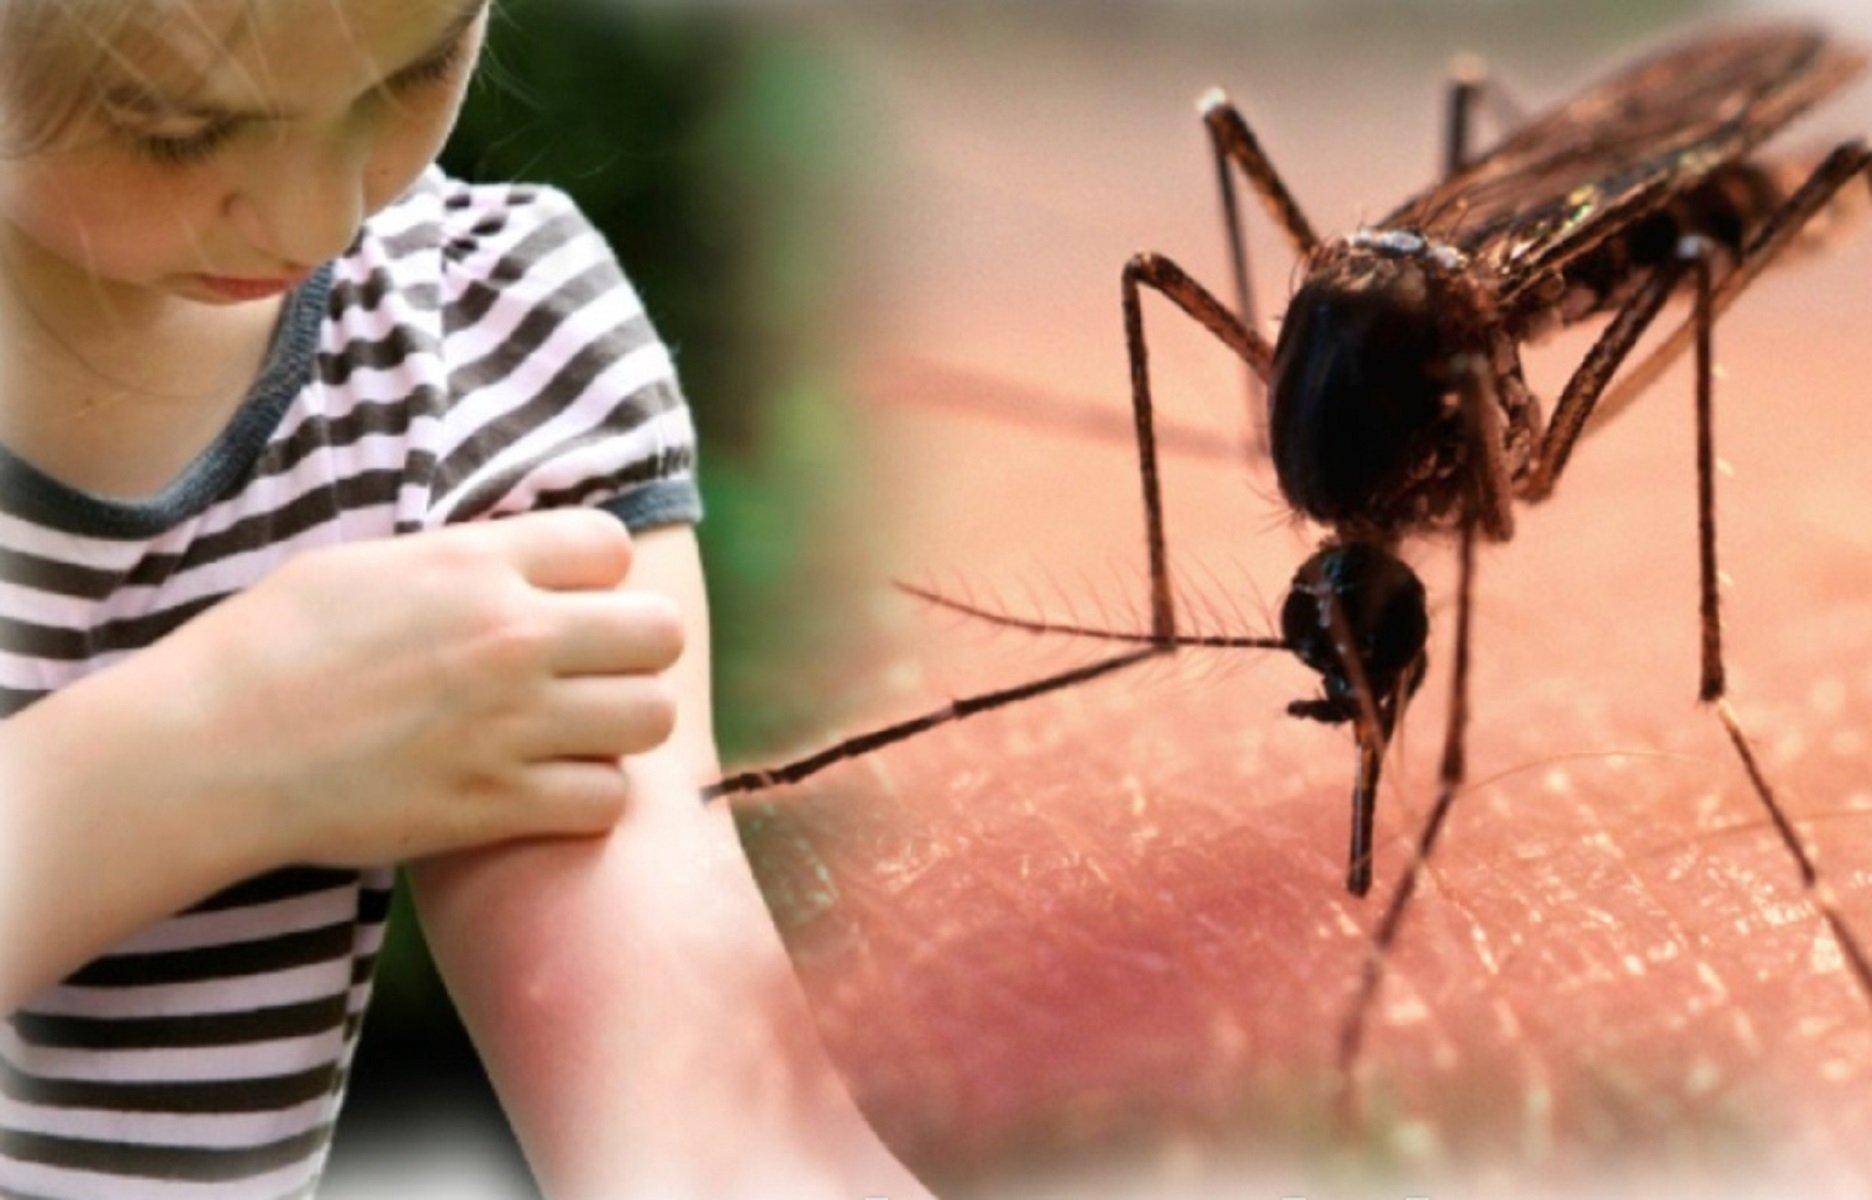 Сколько живет комар обыкновенный, продолжительность жизненного цикла